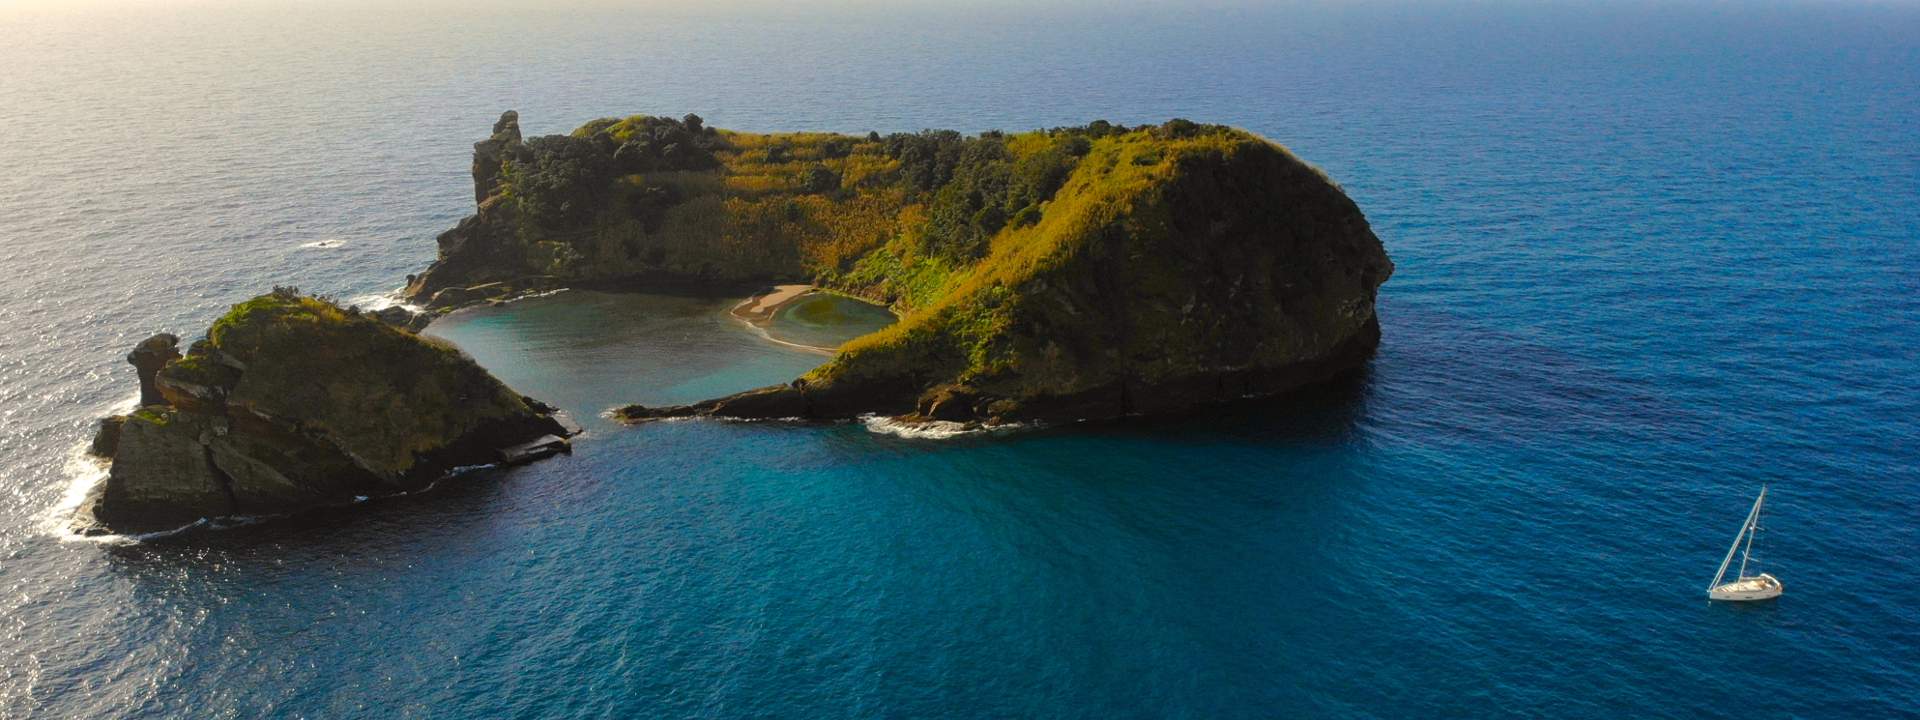 Navega de isla en isla en el archipiélago de las Azores